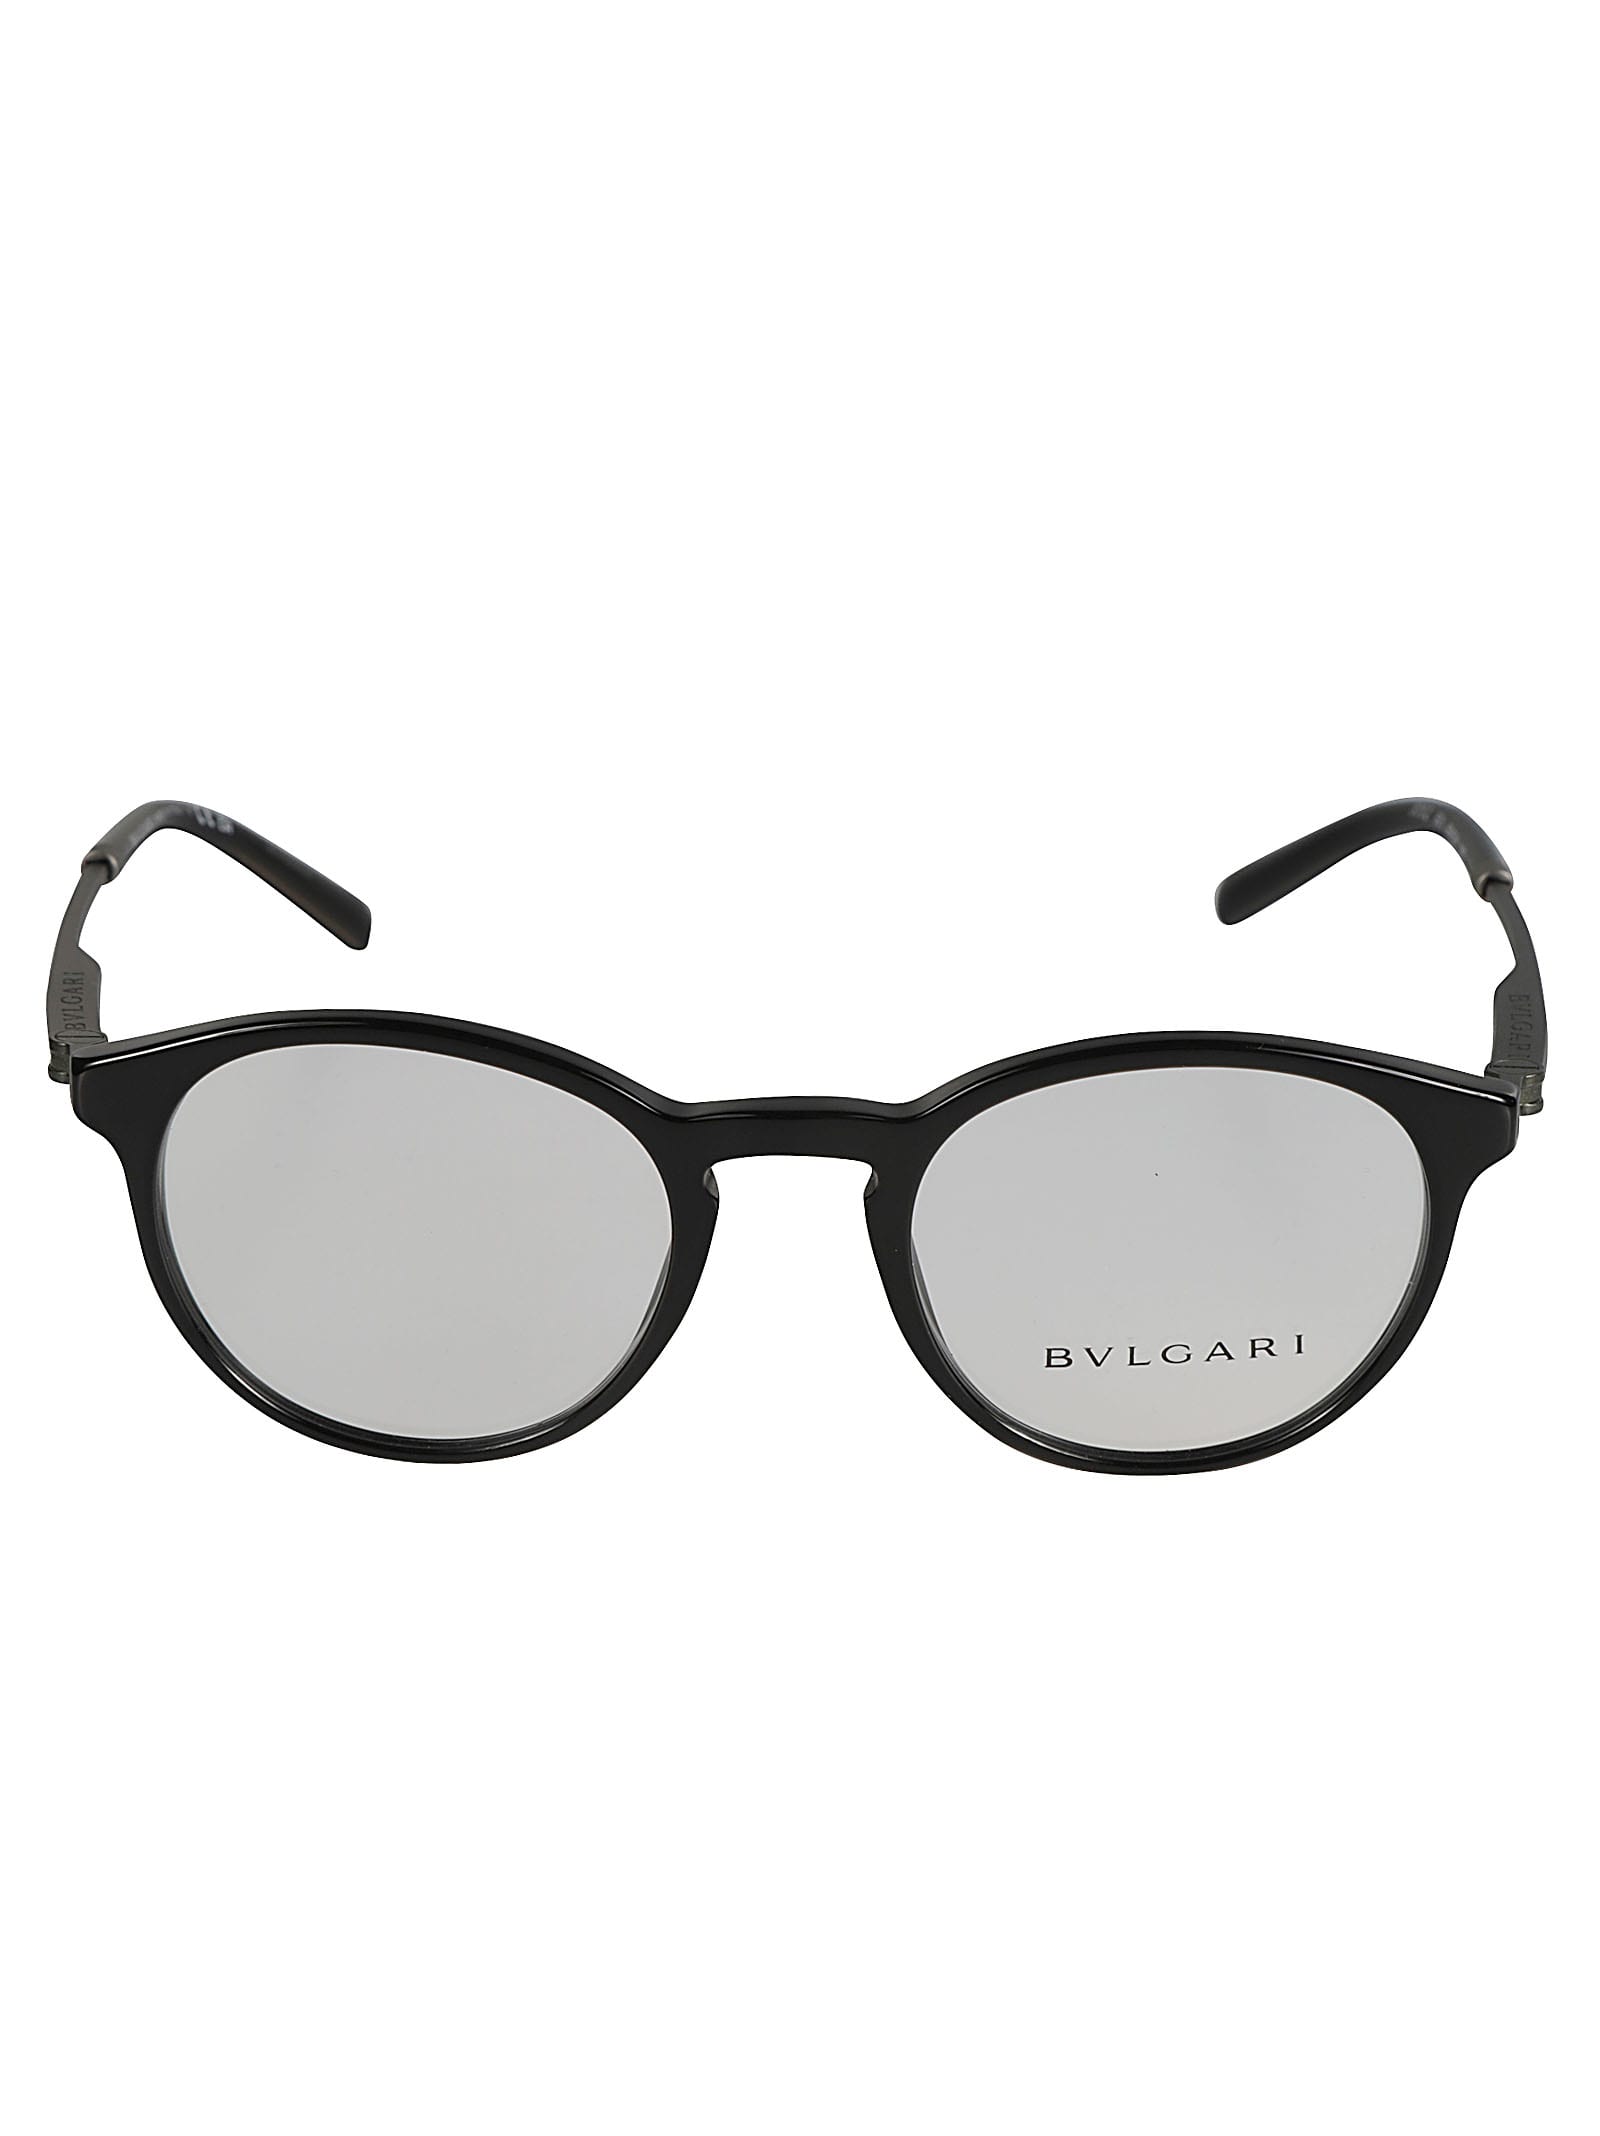 Bulgari Classic Round Rim Glasses In Black